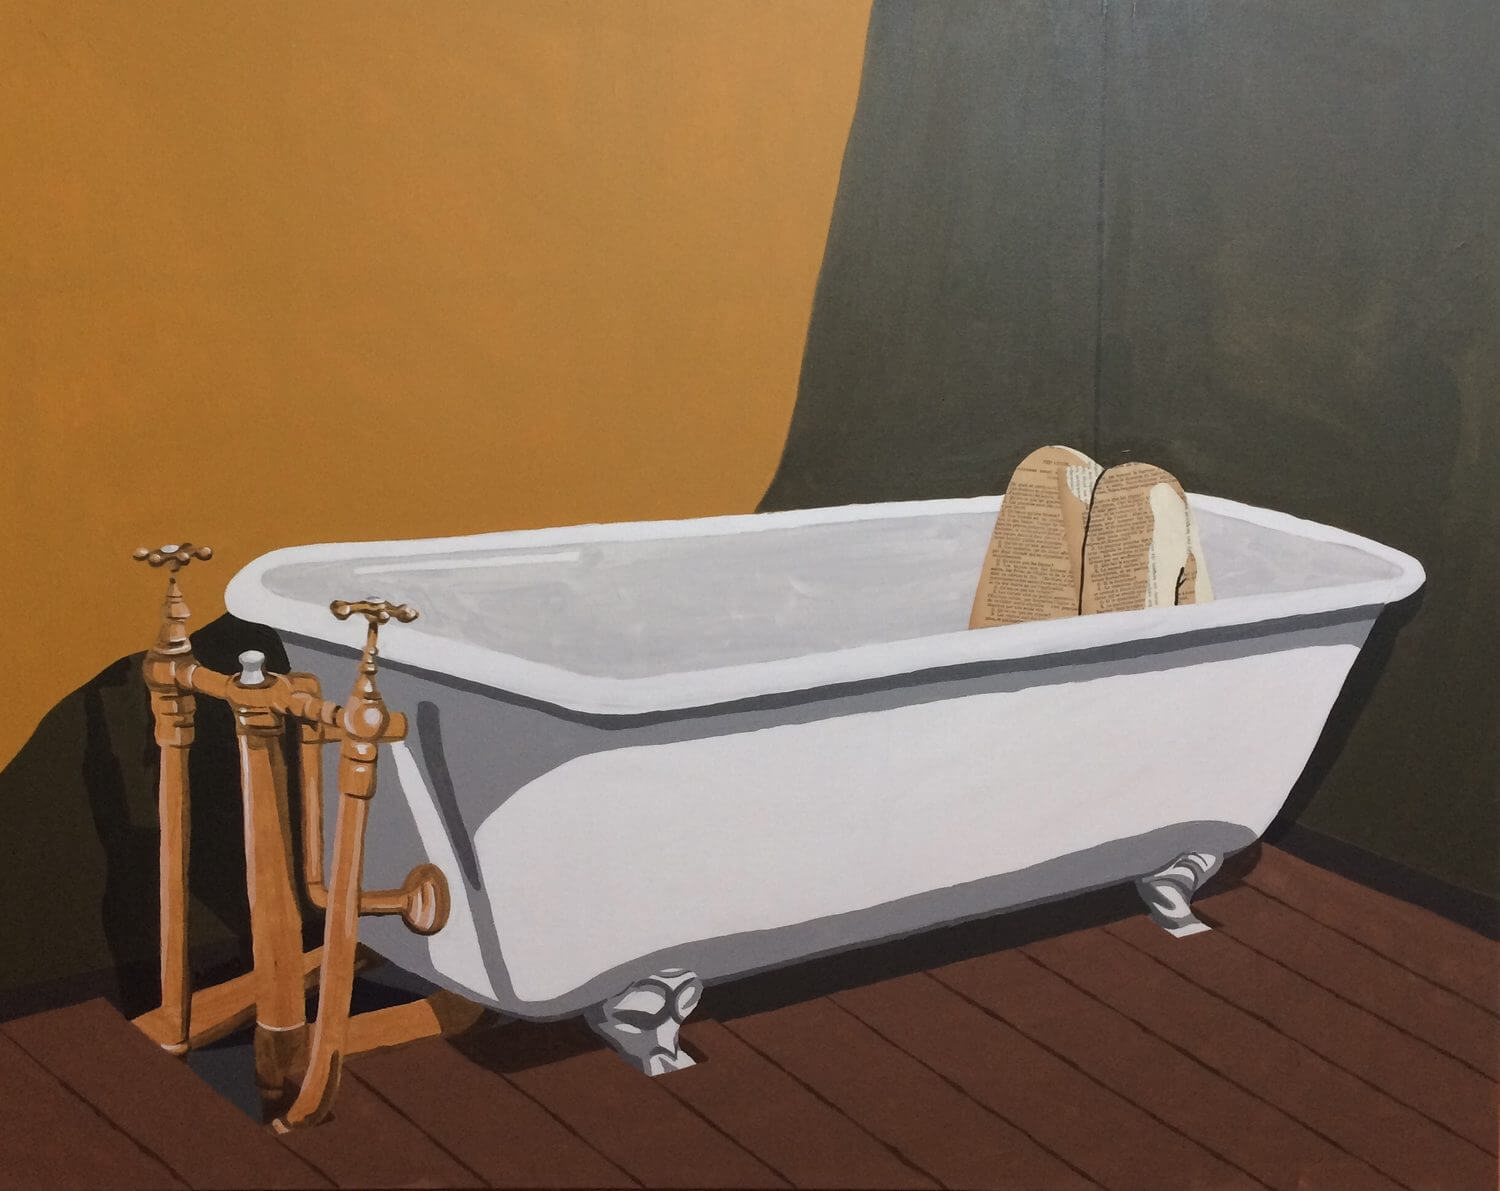 La baignoire (400€) 100 x 80 cm - 2019